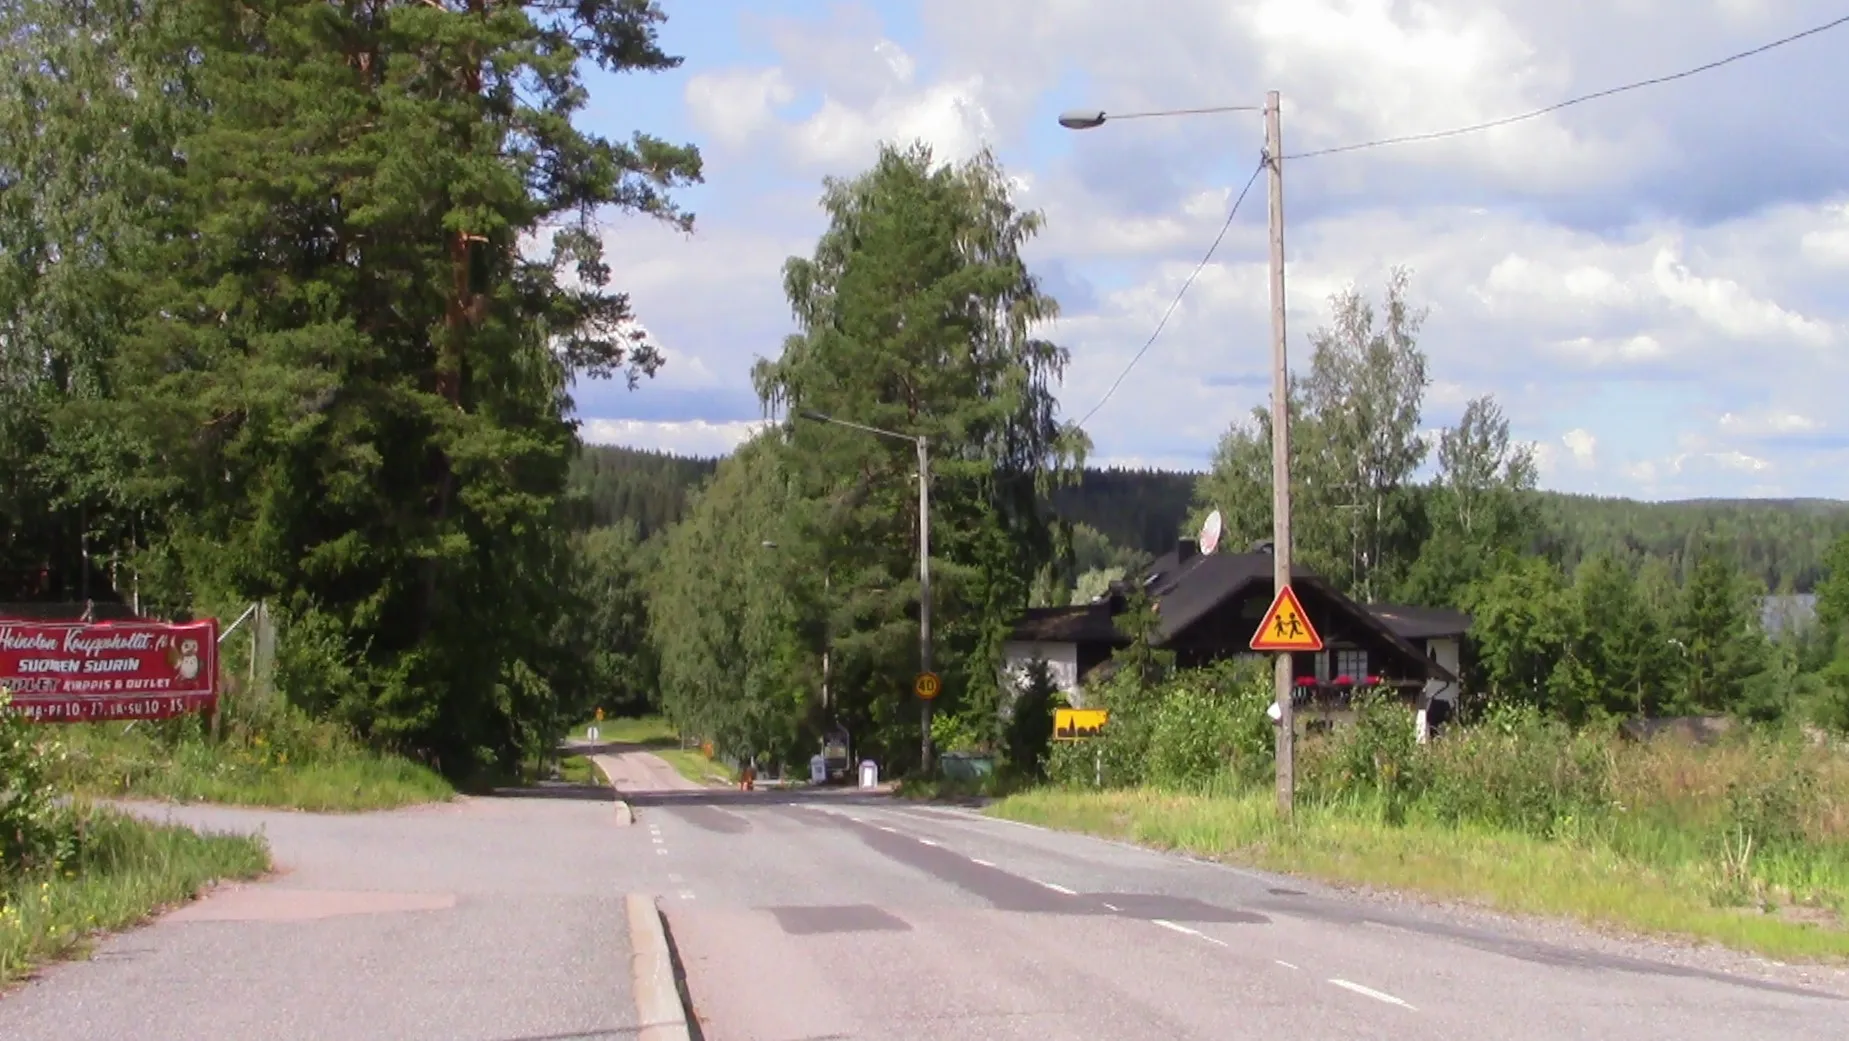 Photo showing: Kausantie road at Myllyoja district in Heinola, Finland.